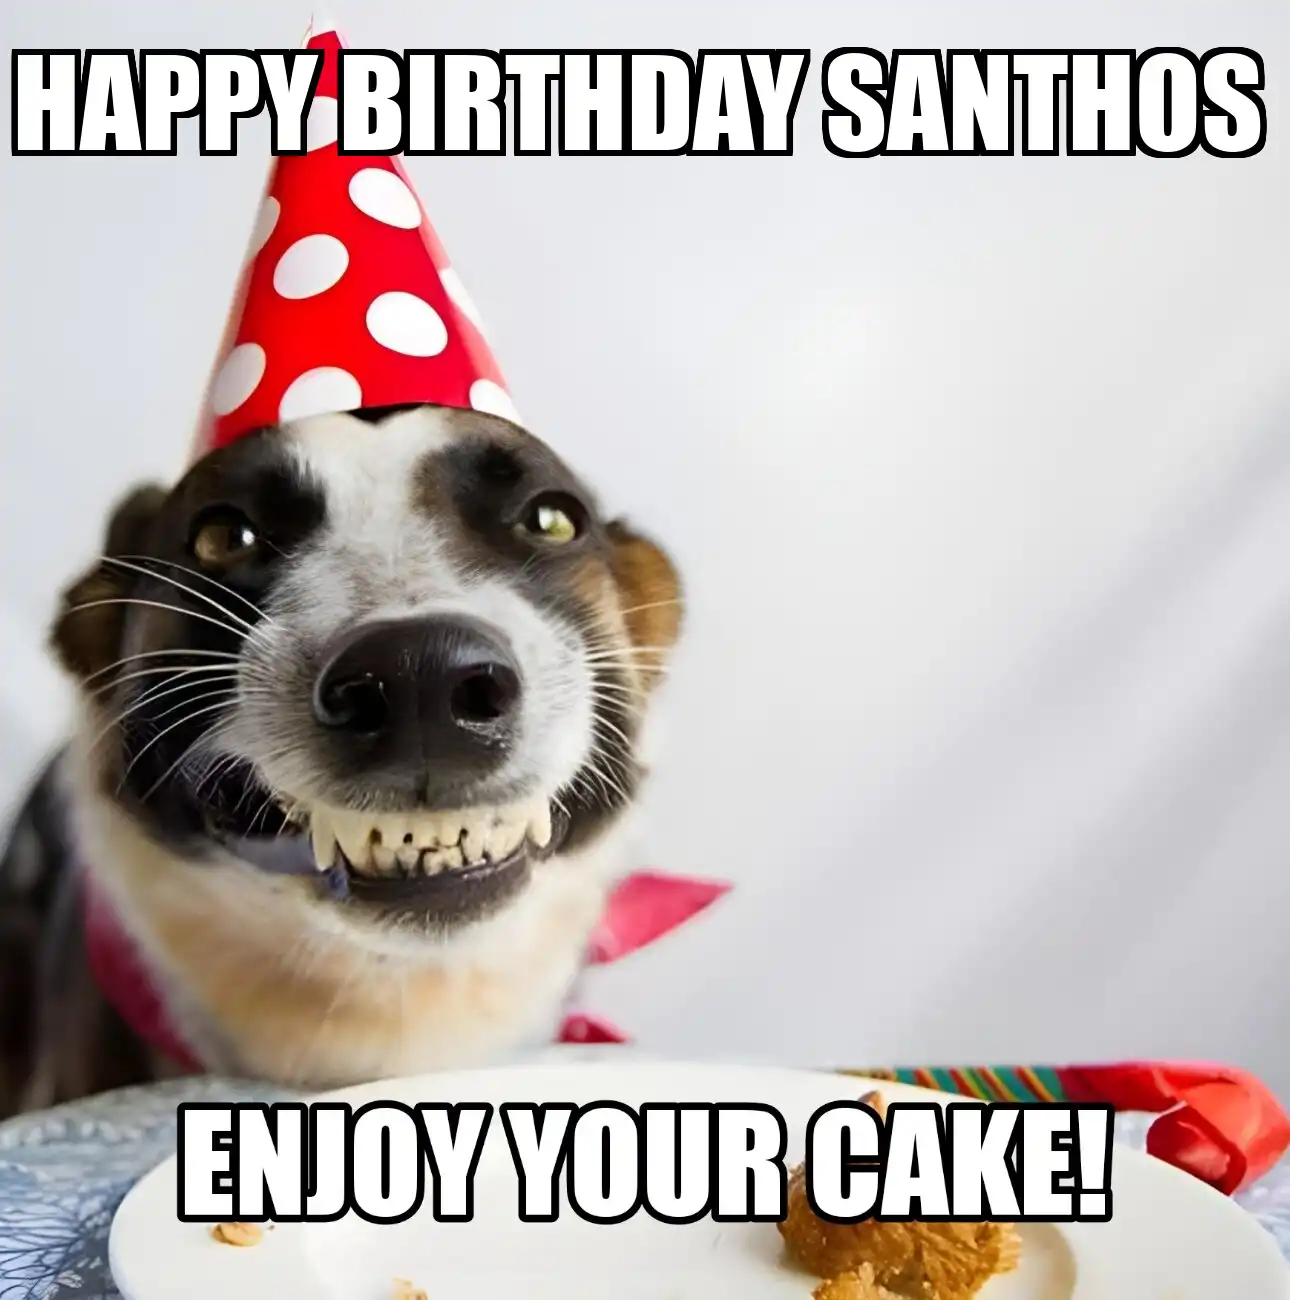 Happy Birthday Santhos Enjoy Your Cake Dog Meme